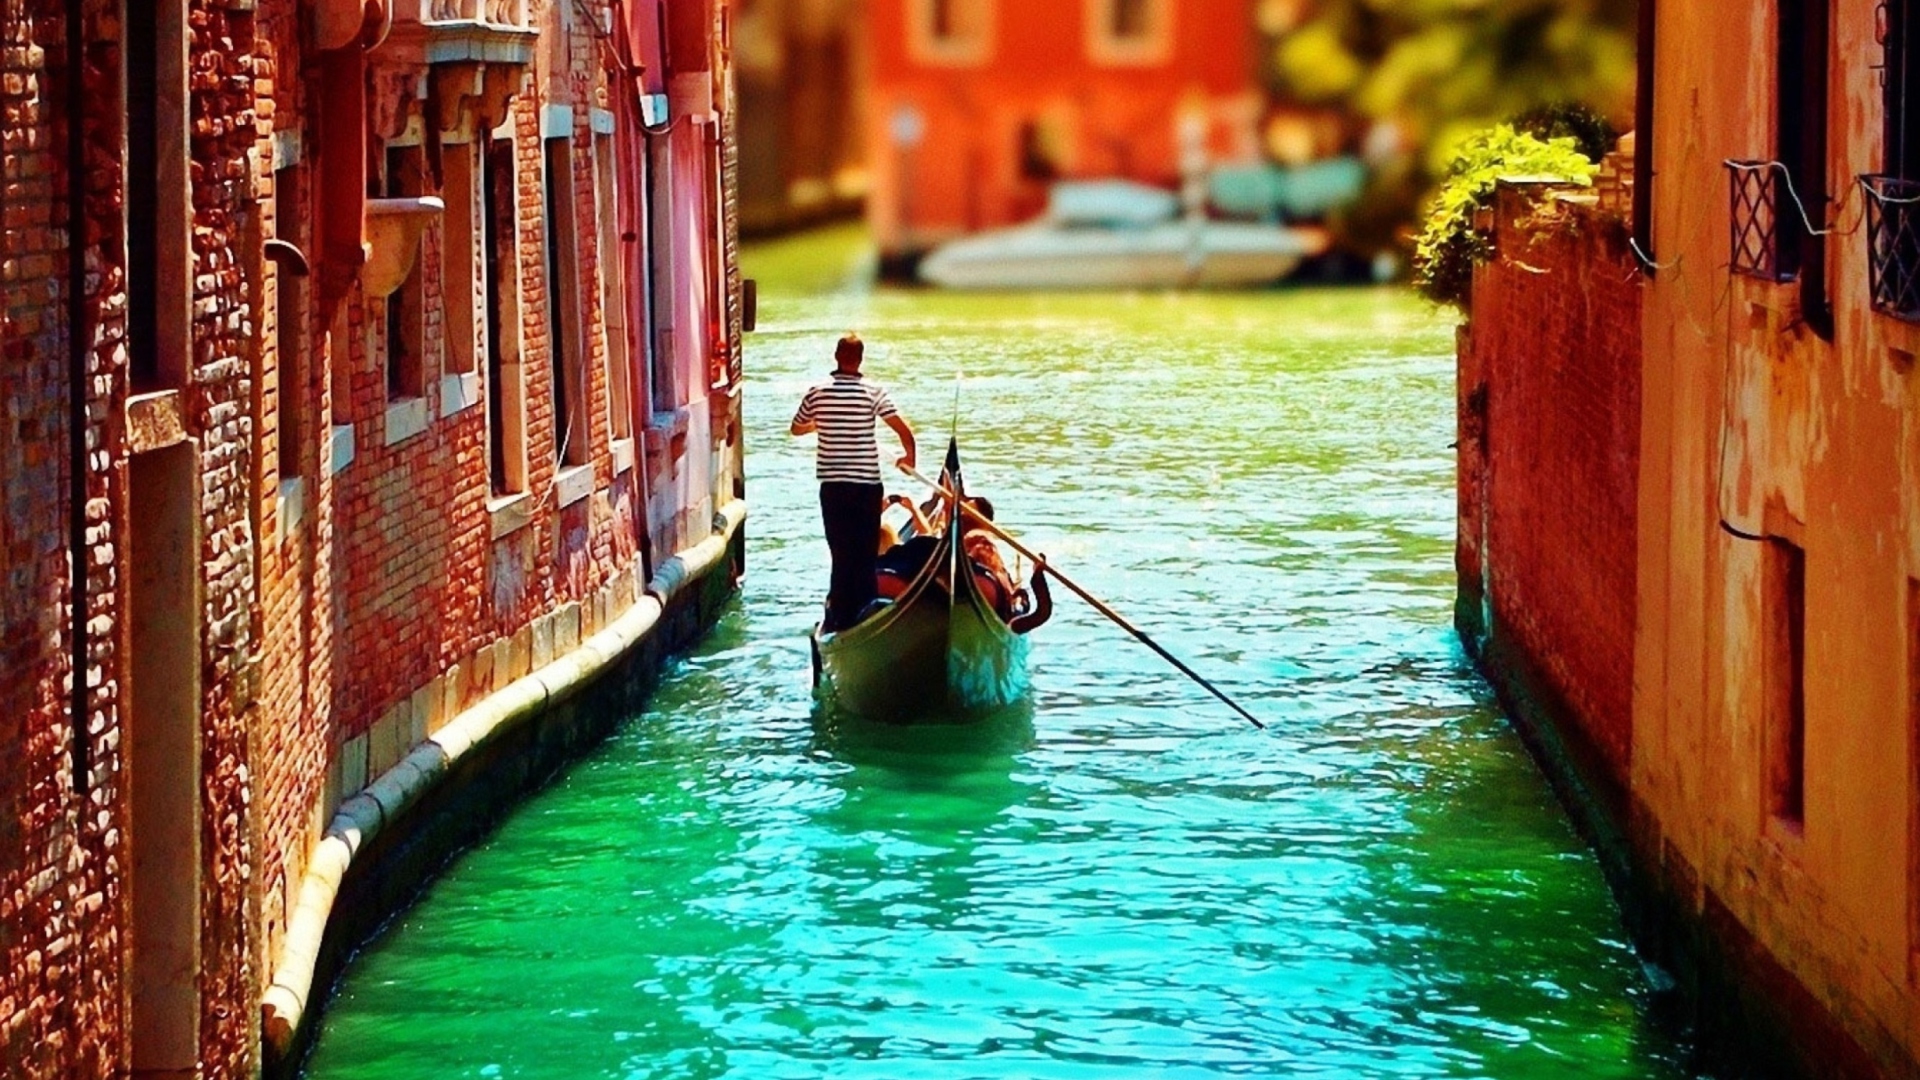 Обои Venice Gondola 1920x1080